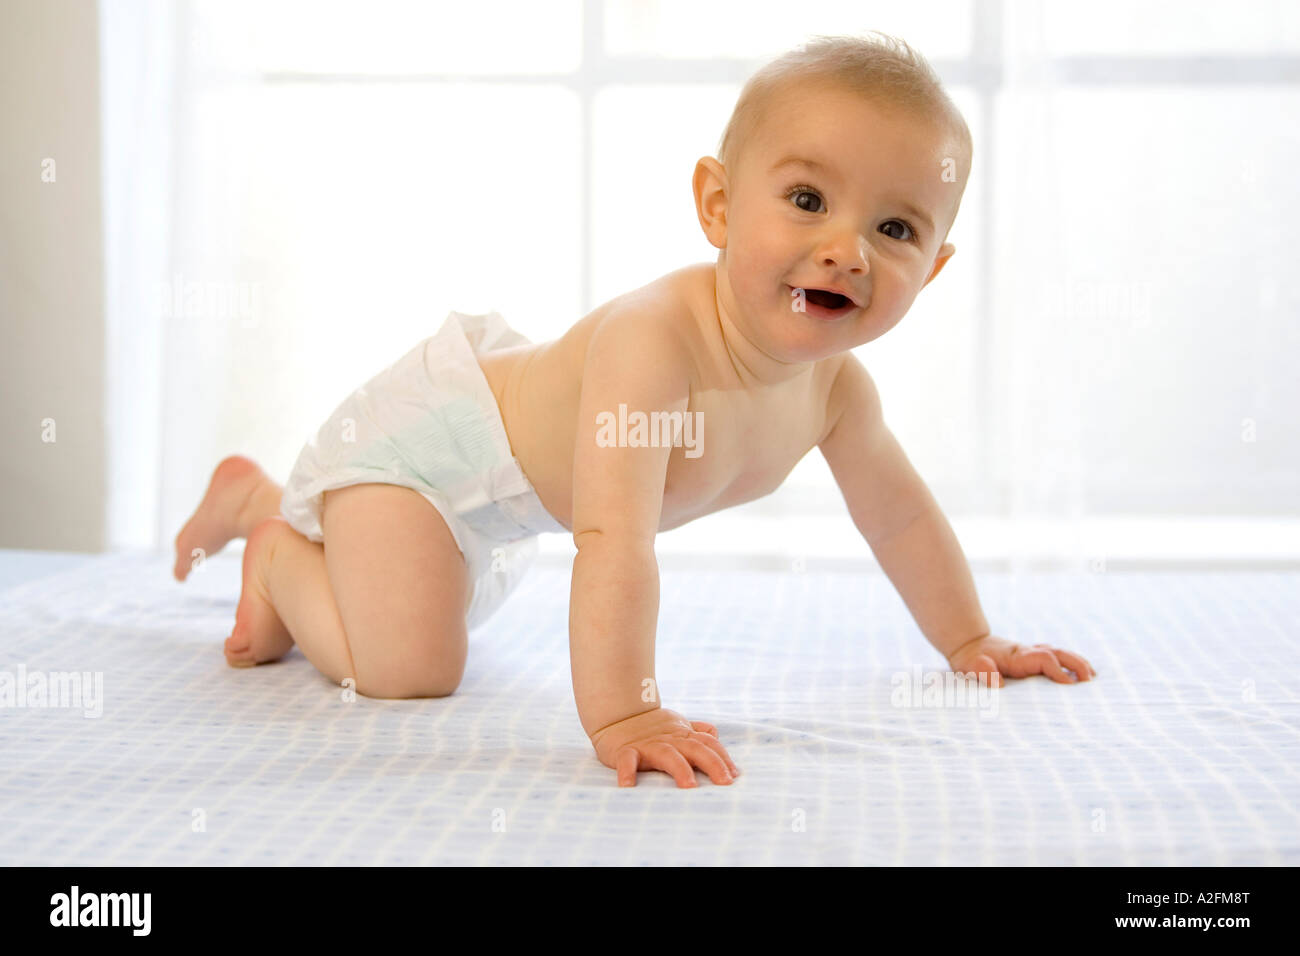 Bébé garçon (6-12 mois) ramper, rire, side view Banque D'Images